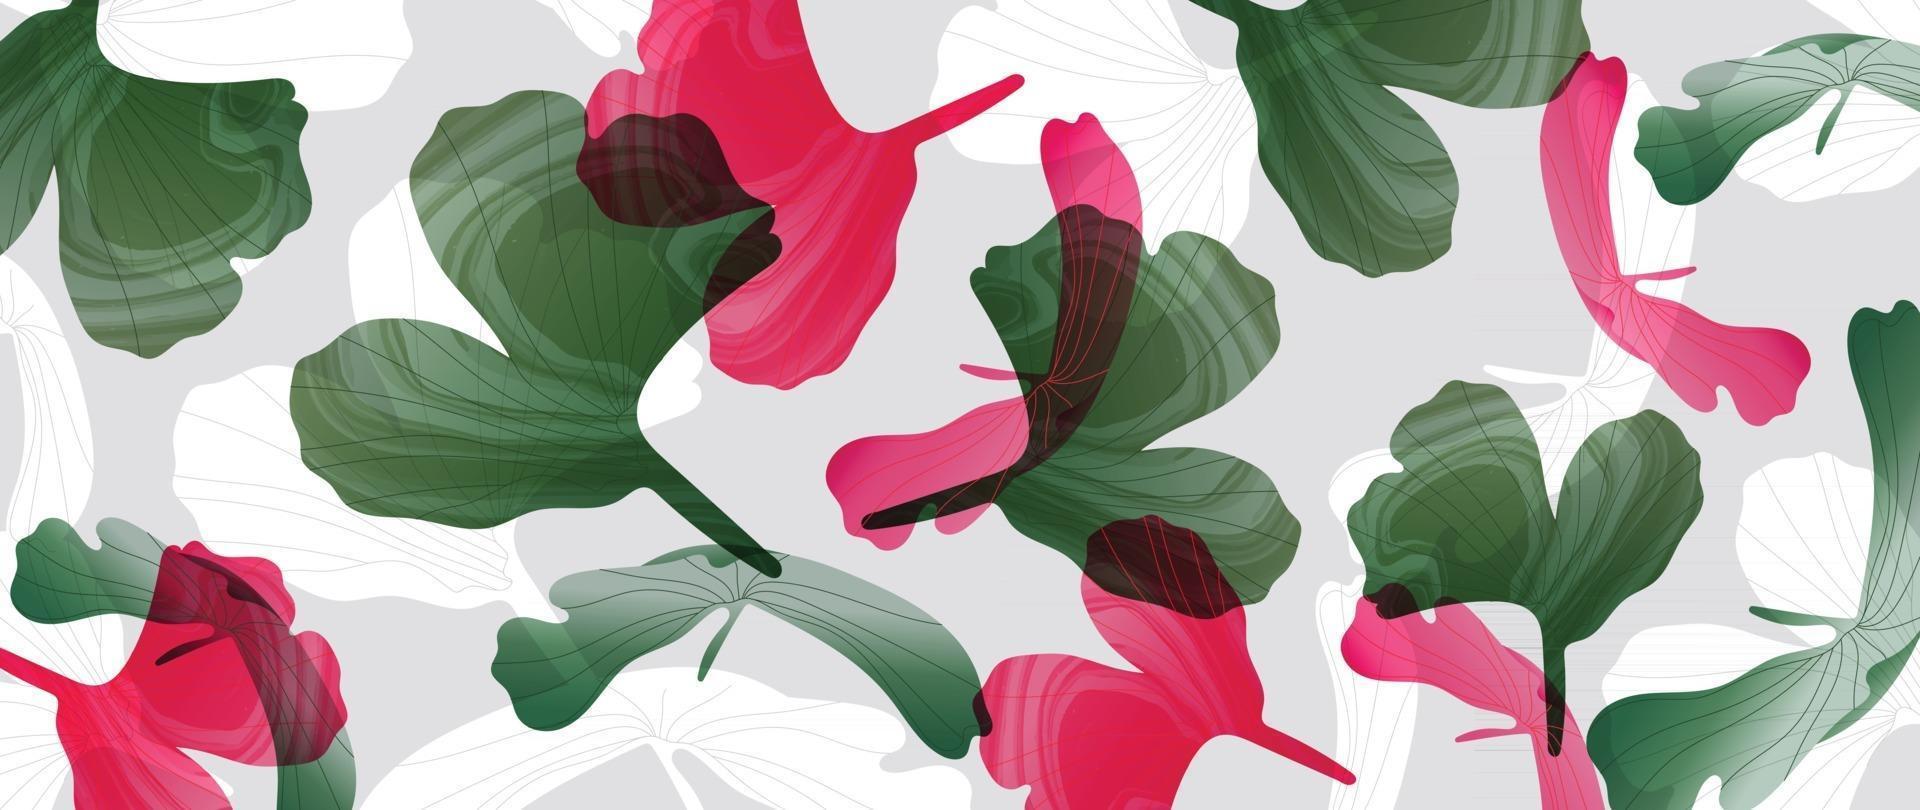 art abstrait feuilles tropicales vecteur de fond. conception de papier peint avec texture d'art à l'aquarelle à partir de feuilles de palmier, feuilles de jungle, feuille de monstera, motif floral botanique exotique.